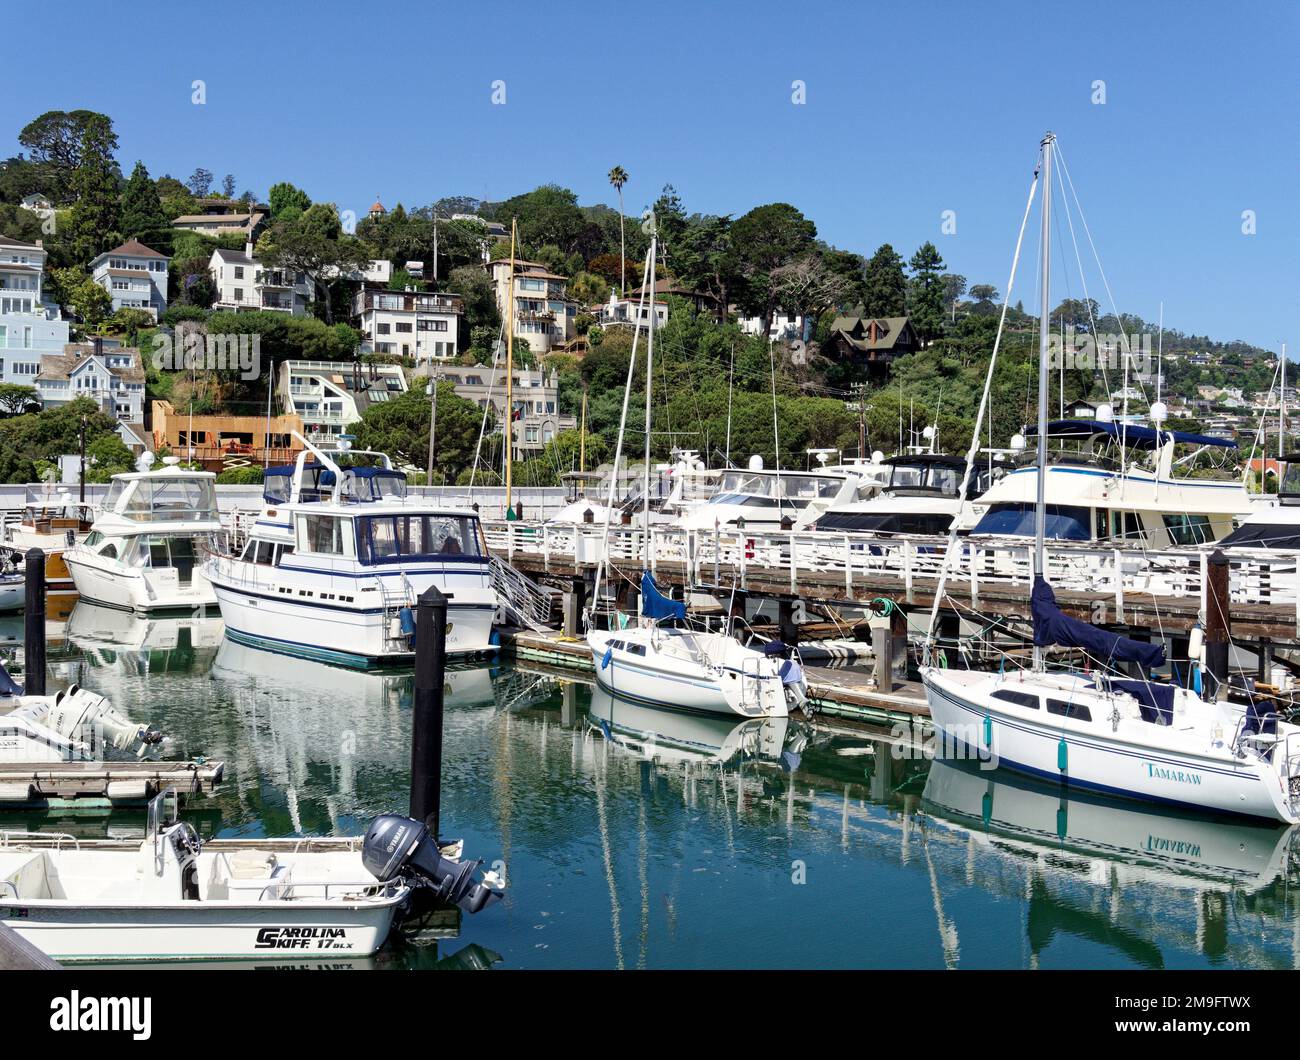 Port de plaisance de Sausalito à Sausalito, dans le comté de Marin, en Californie, sur les rives de la baie de San Francisco, accueillant une gamme de bateaux à moteur et à voile. Banque D'Images